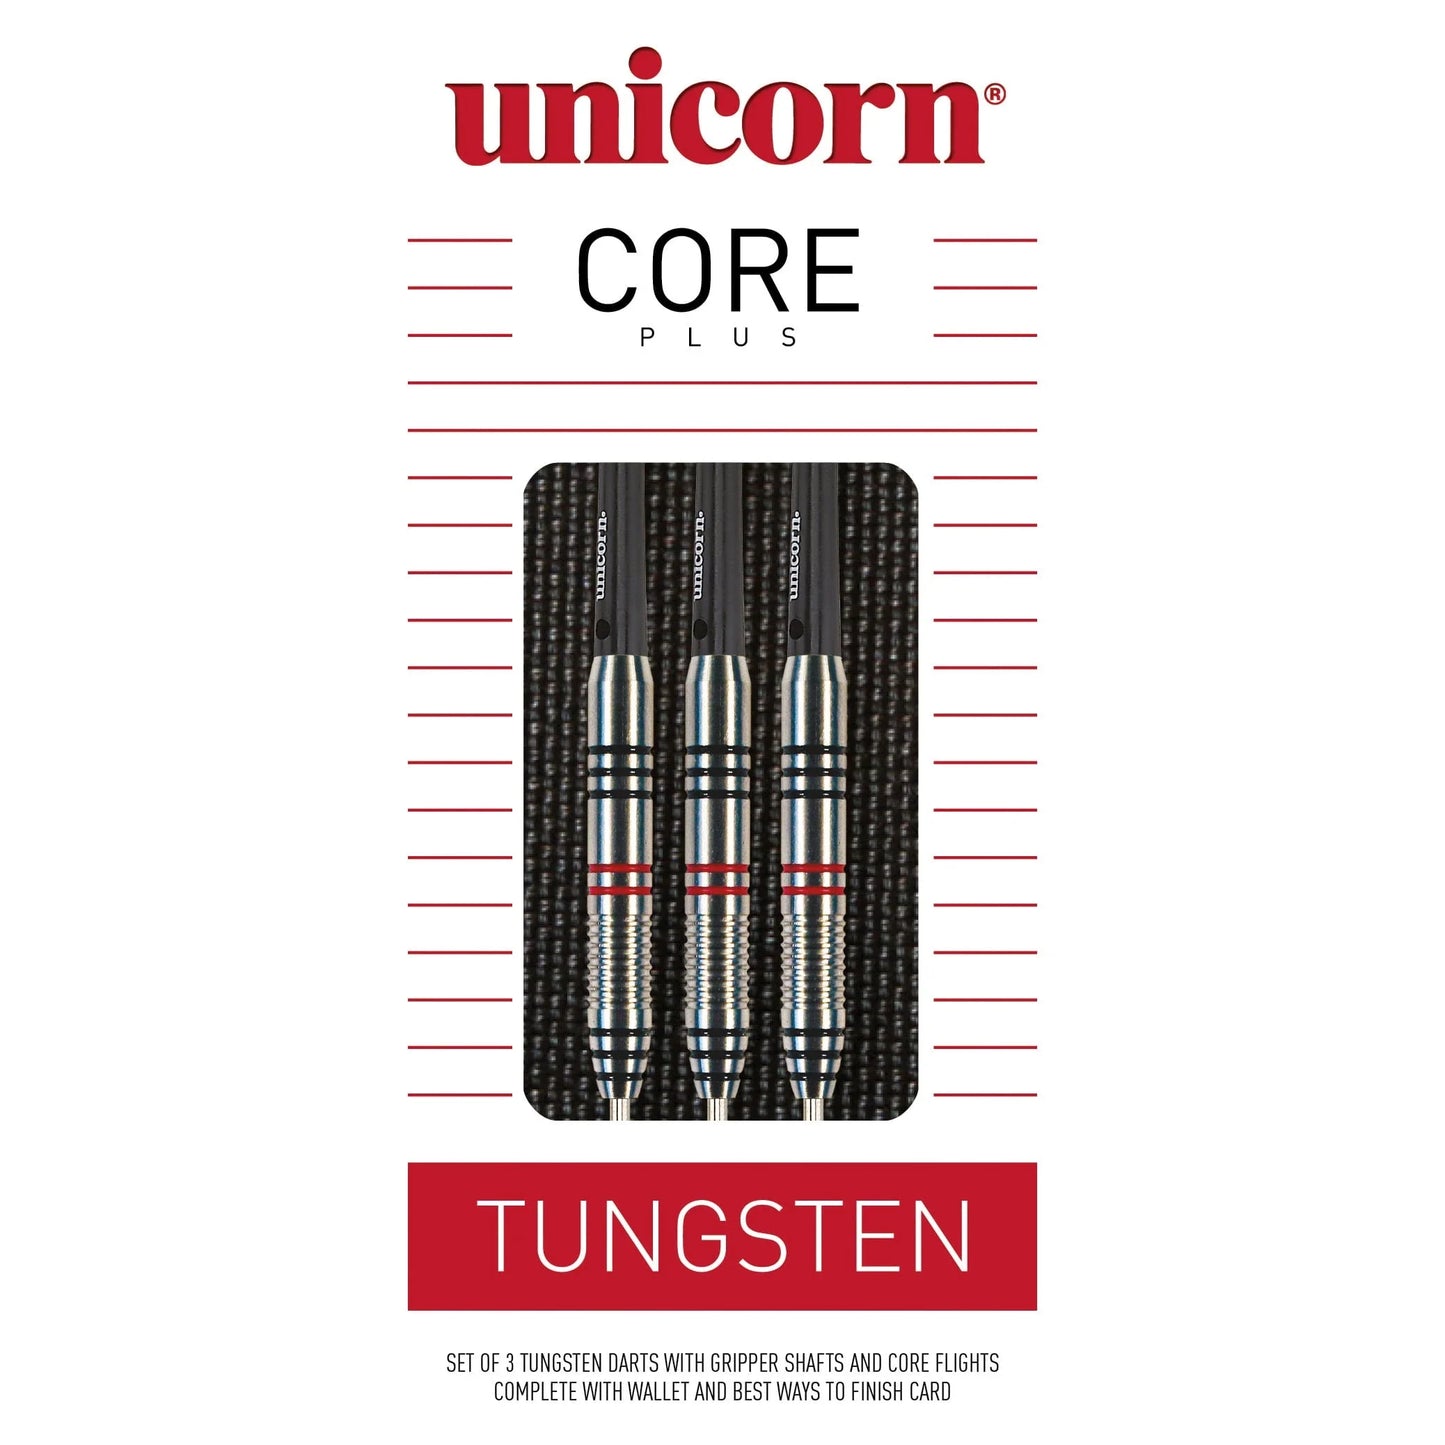 Unicorn Core Plus Tungsten 27g Darts